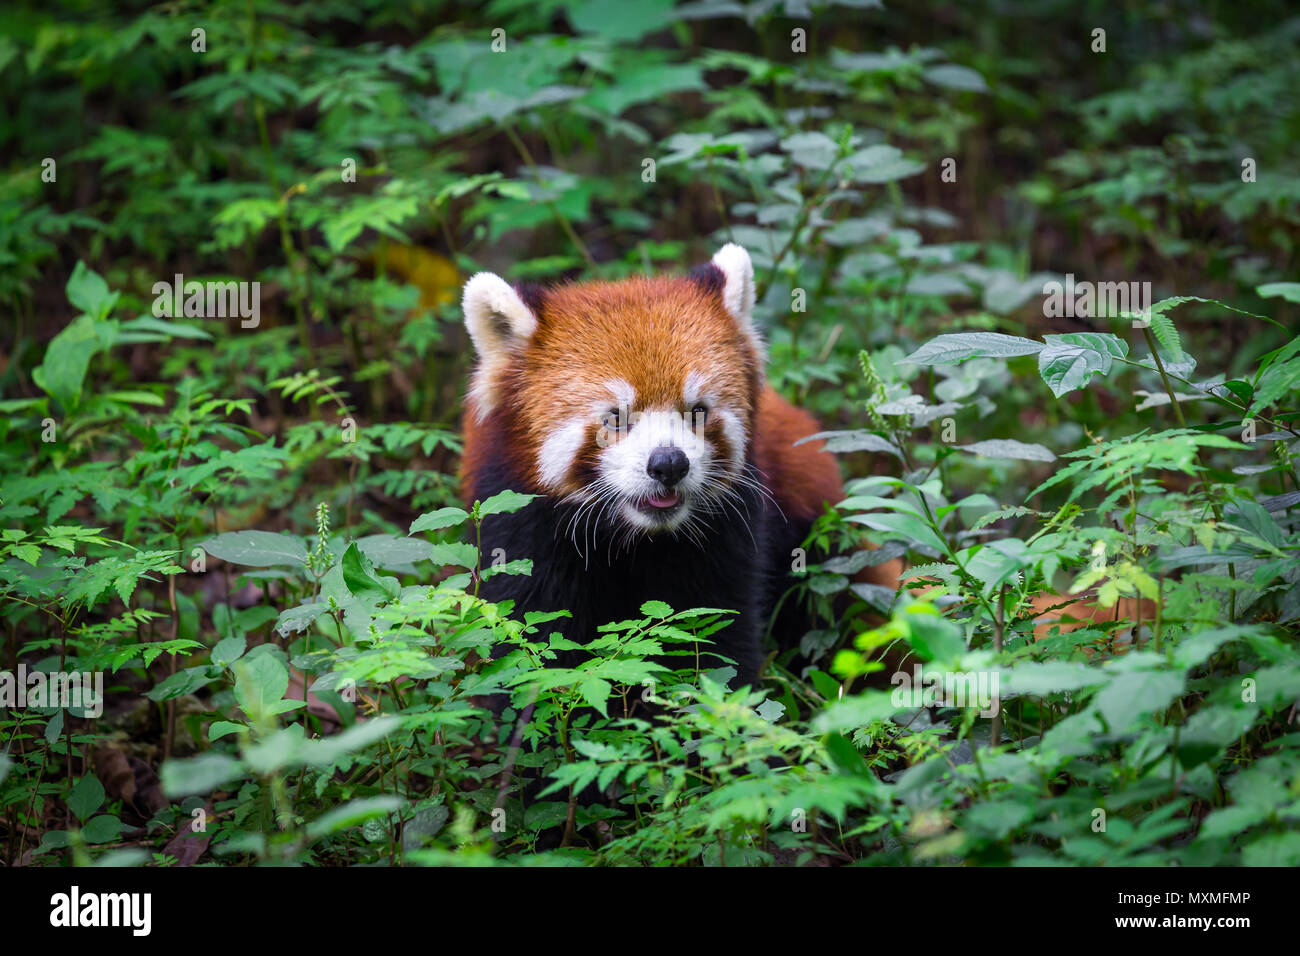 Porträt von einem entzückenden Roten Panda, Ailurus fulgens, Fire Fox, die von Pflanzen in Wald umgeben Stockfoto